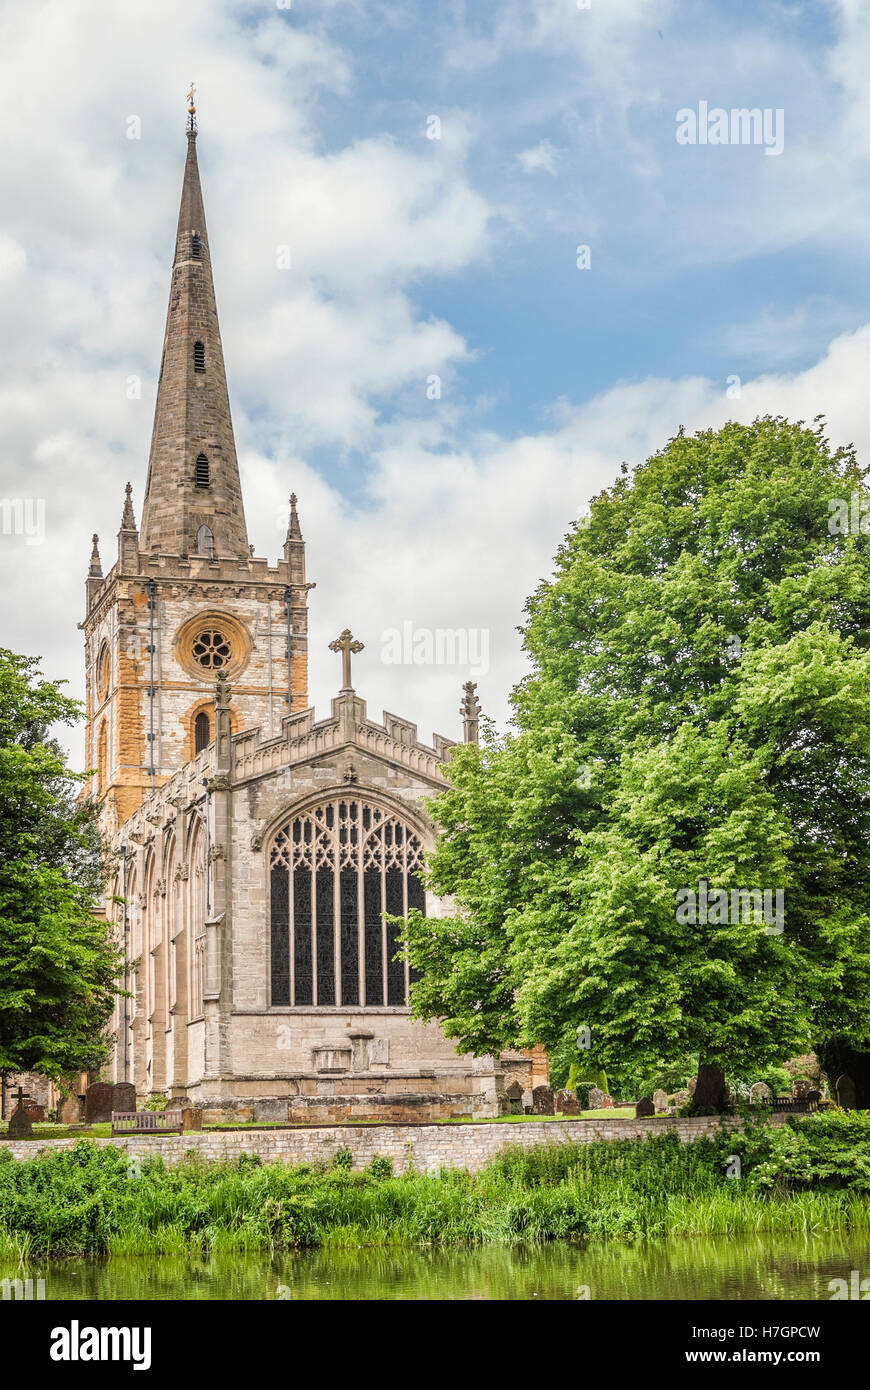 L'église de la Sainte et indivisible Trinité, Stratford-upon-Avon, Warwickshire, Angleterre Banque D'Images